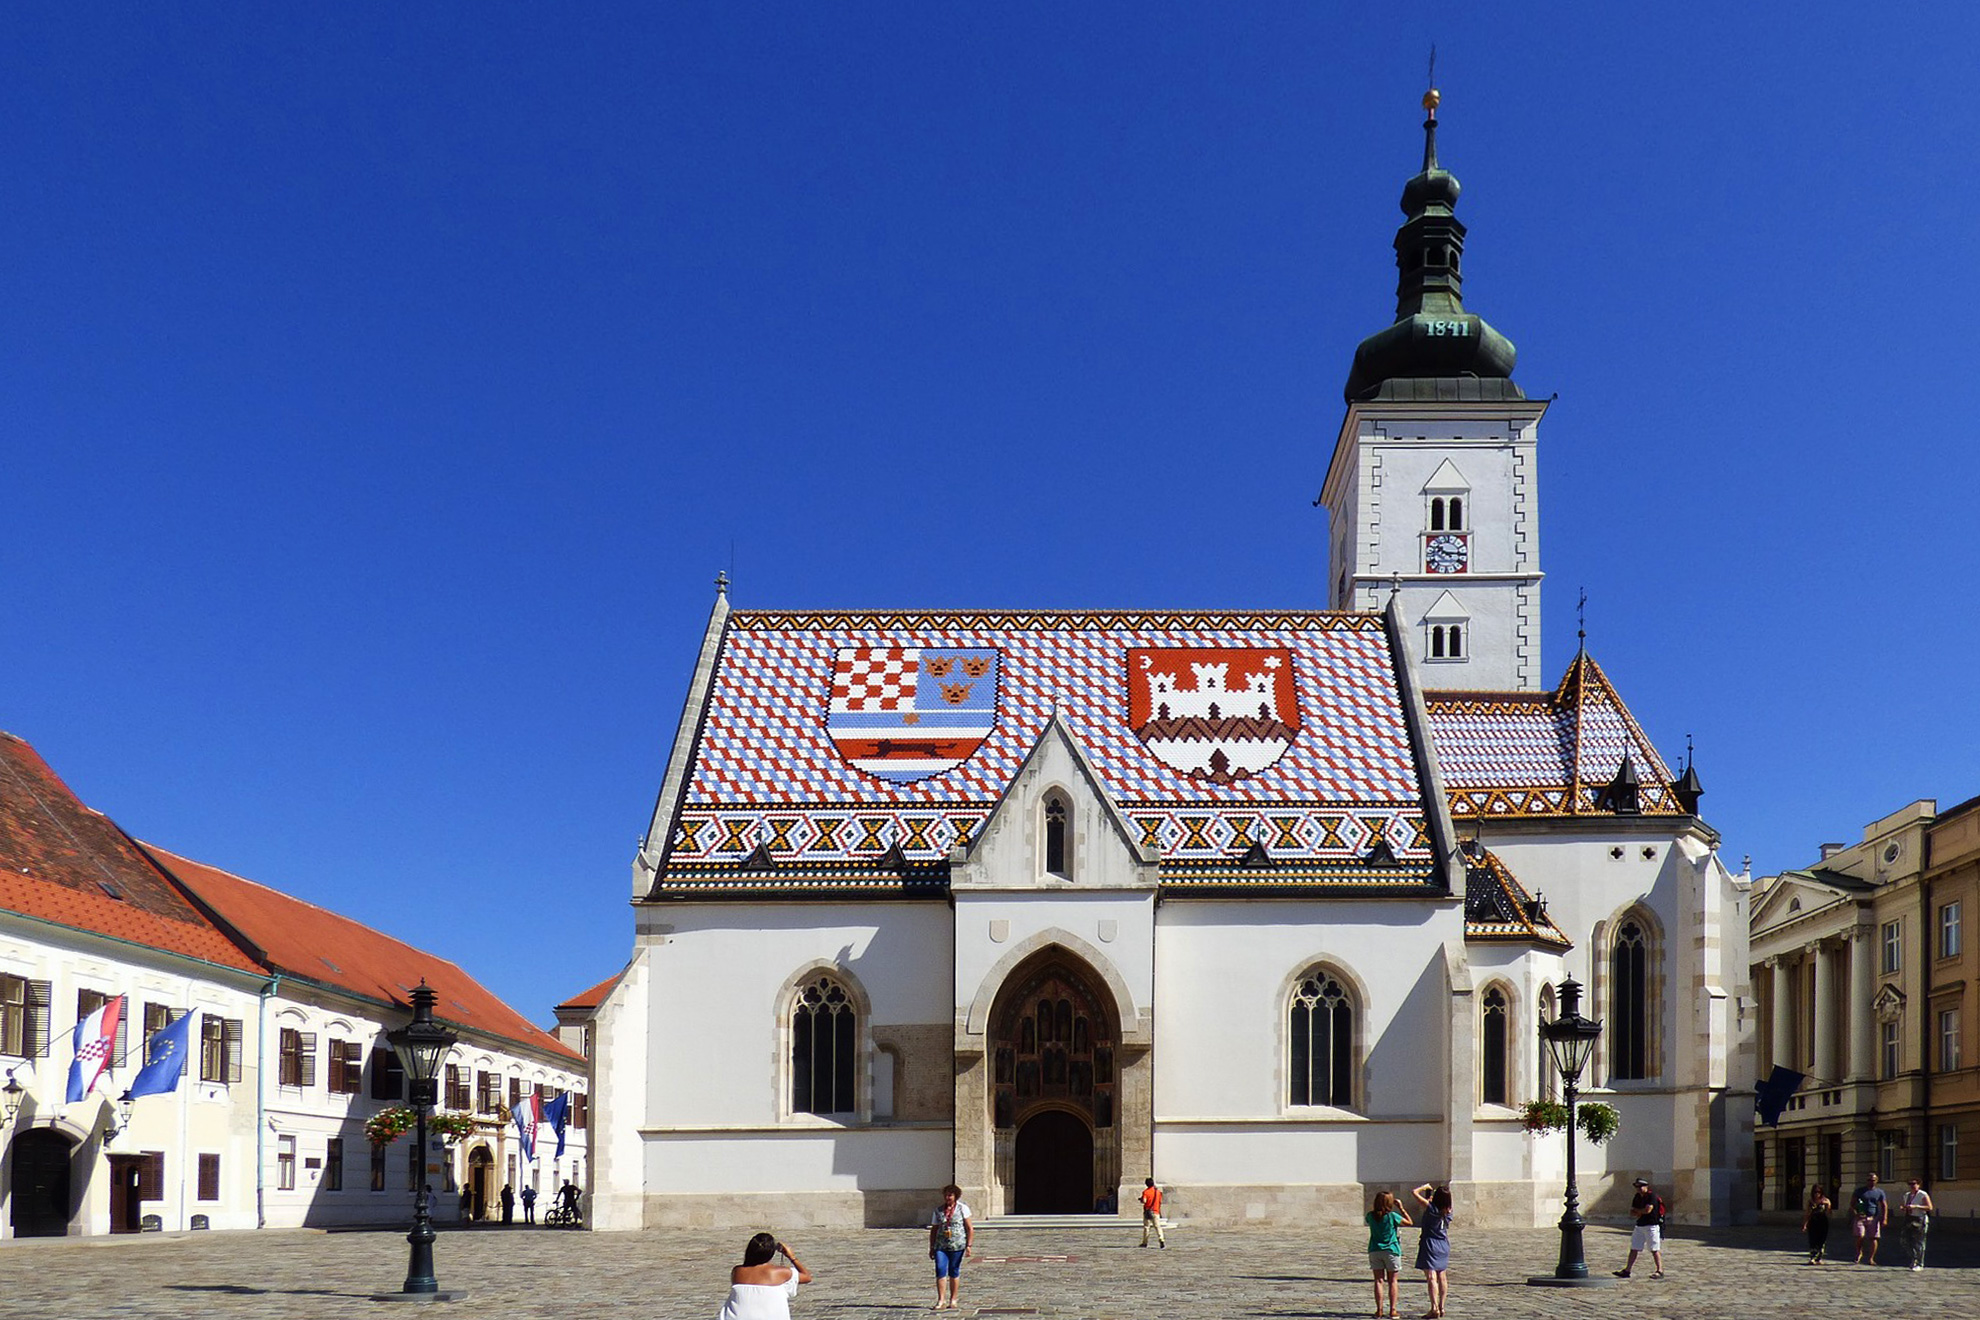 Приказно пътешествие - Словения и Хърватия - Църквата &bdquo;Св. Марк&ldquo;, Загреб, Хърватия - The Church of St. Mark (St. Mark's Church), Zagreb, Croatia